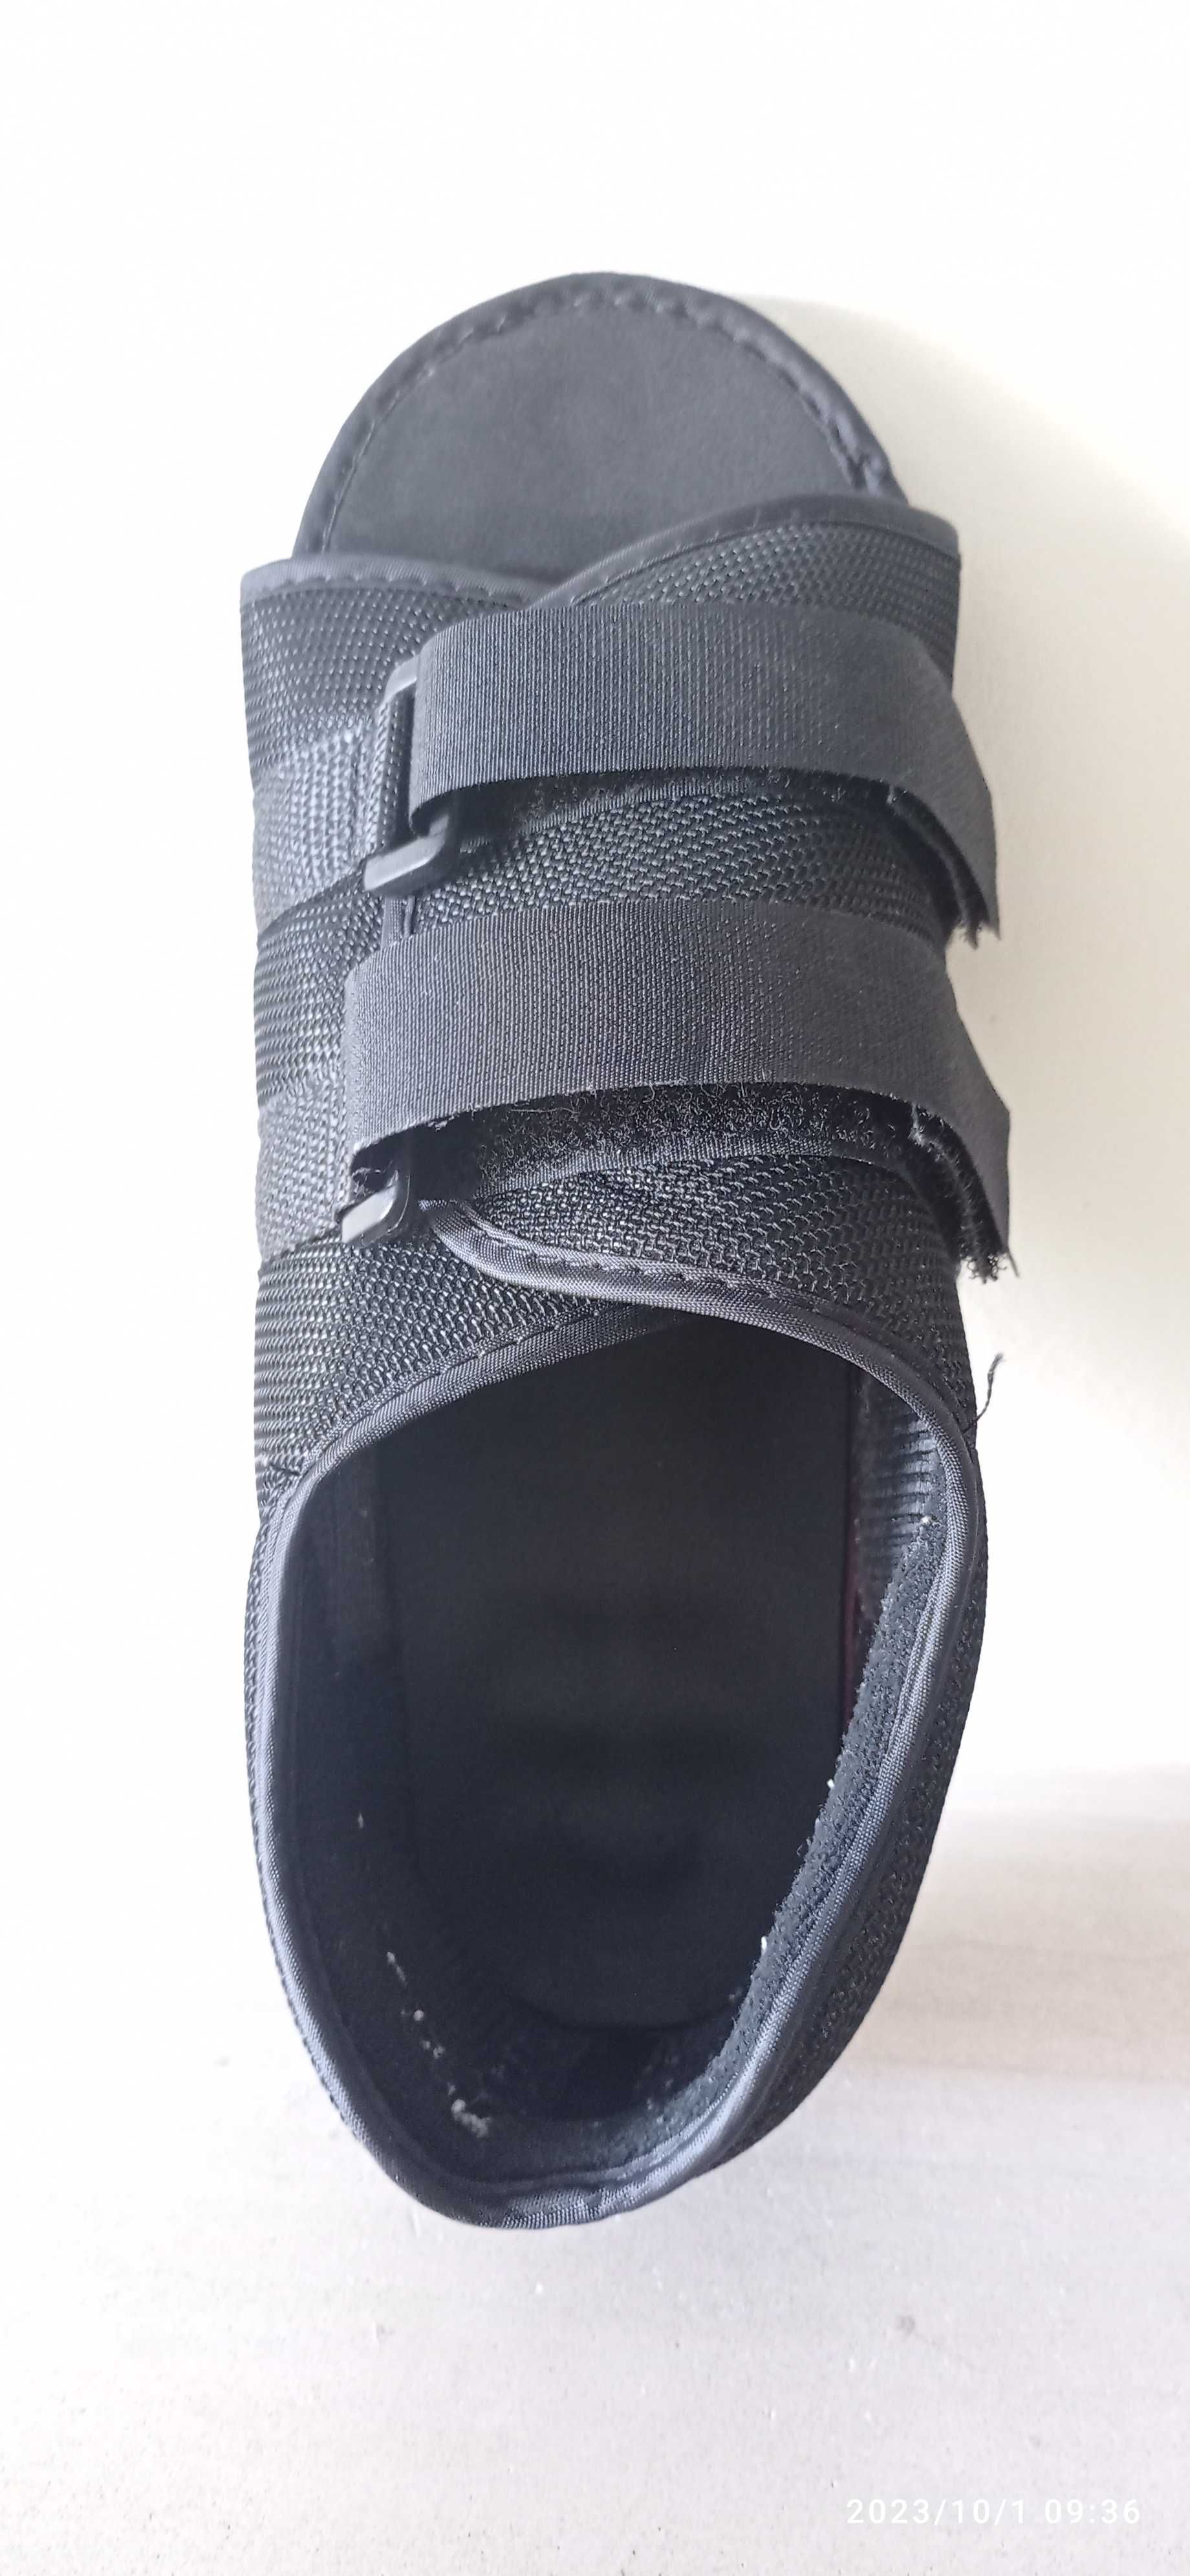 Sapato ortopédico de carga total pós cirurgia Tamanho M, mt pouco uso.